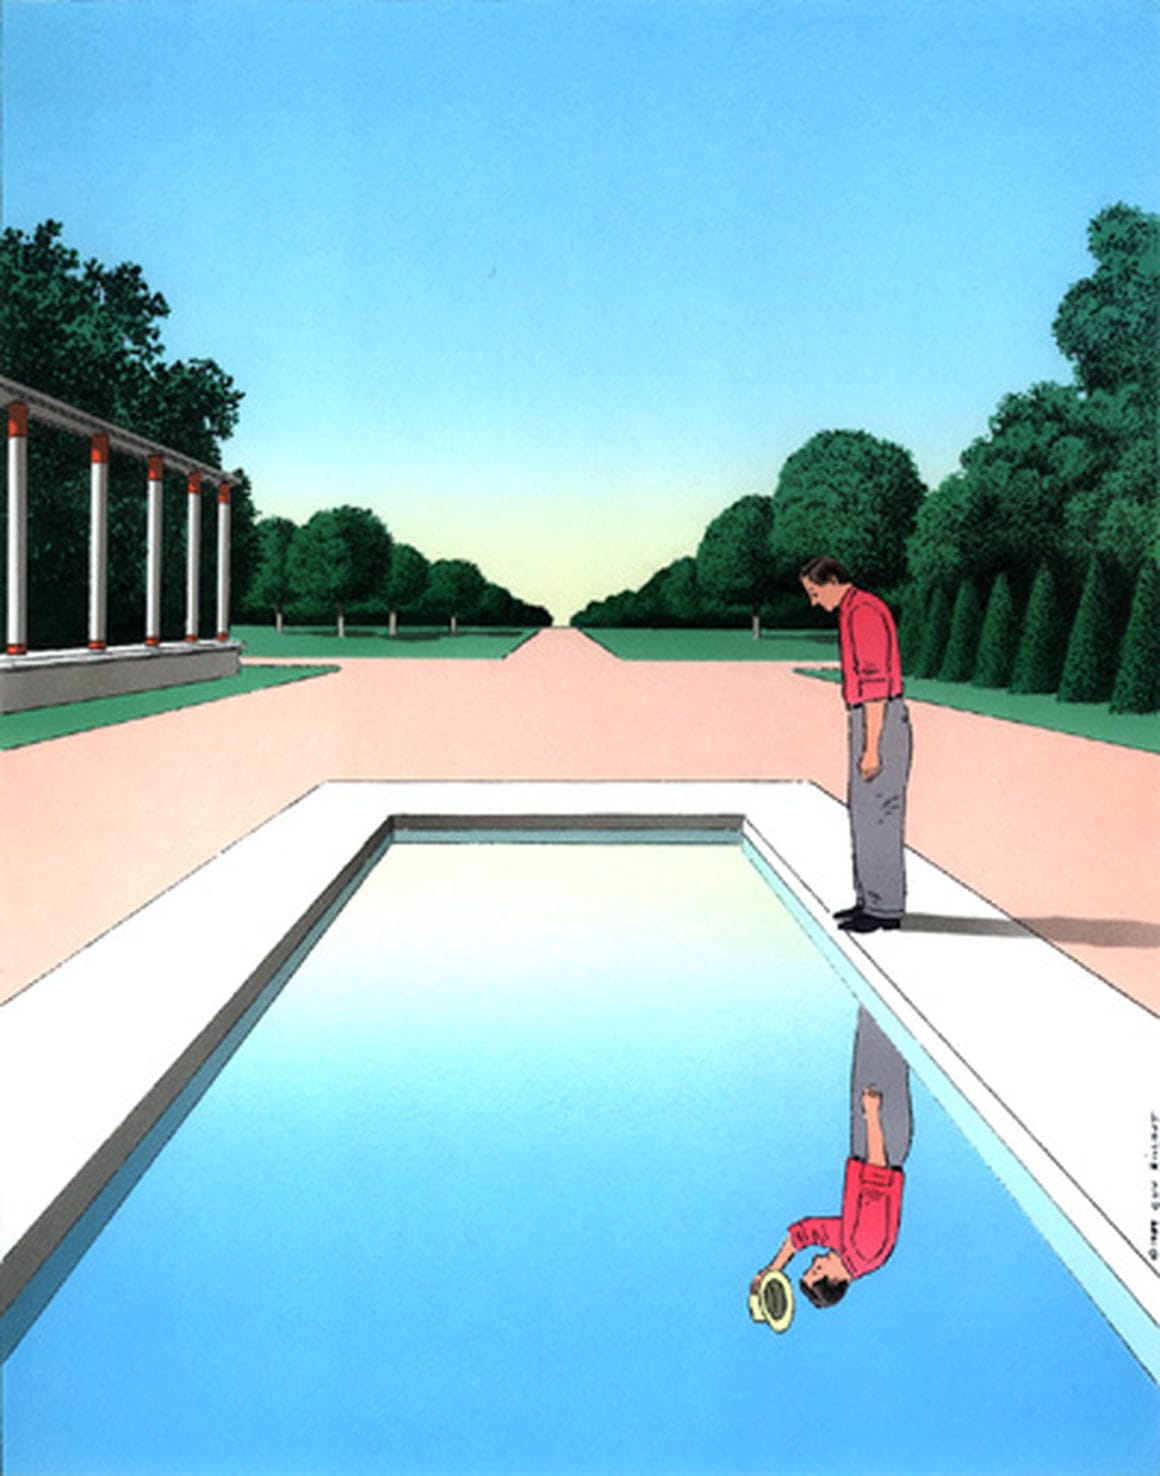 Œuvre de Billout où on voit un homme regarder son reflet dans une piscine, reflet qui le salue avec son chapeau